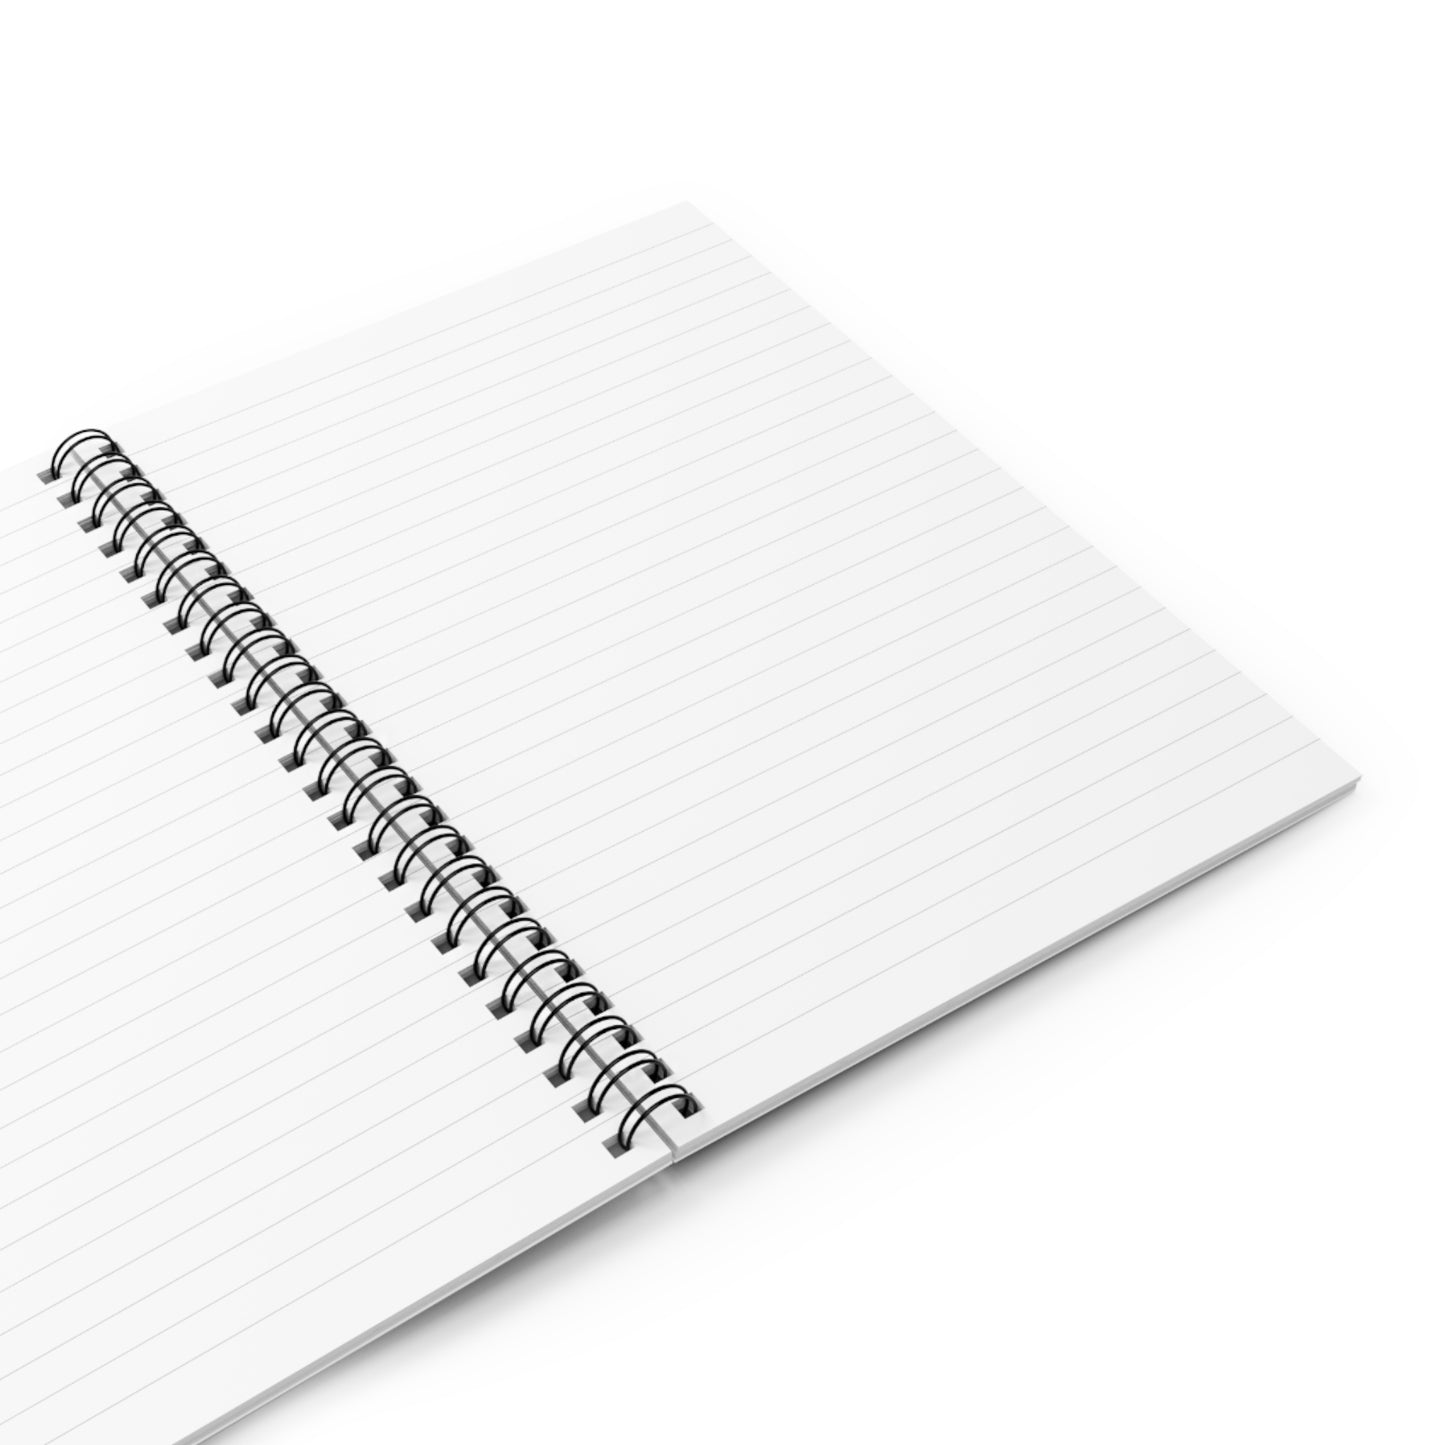 ACK Spiral Notebook - Ruled Line